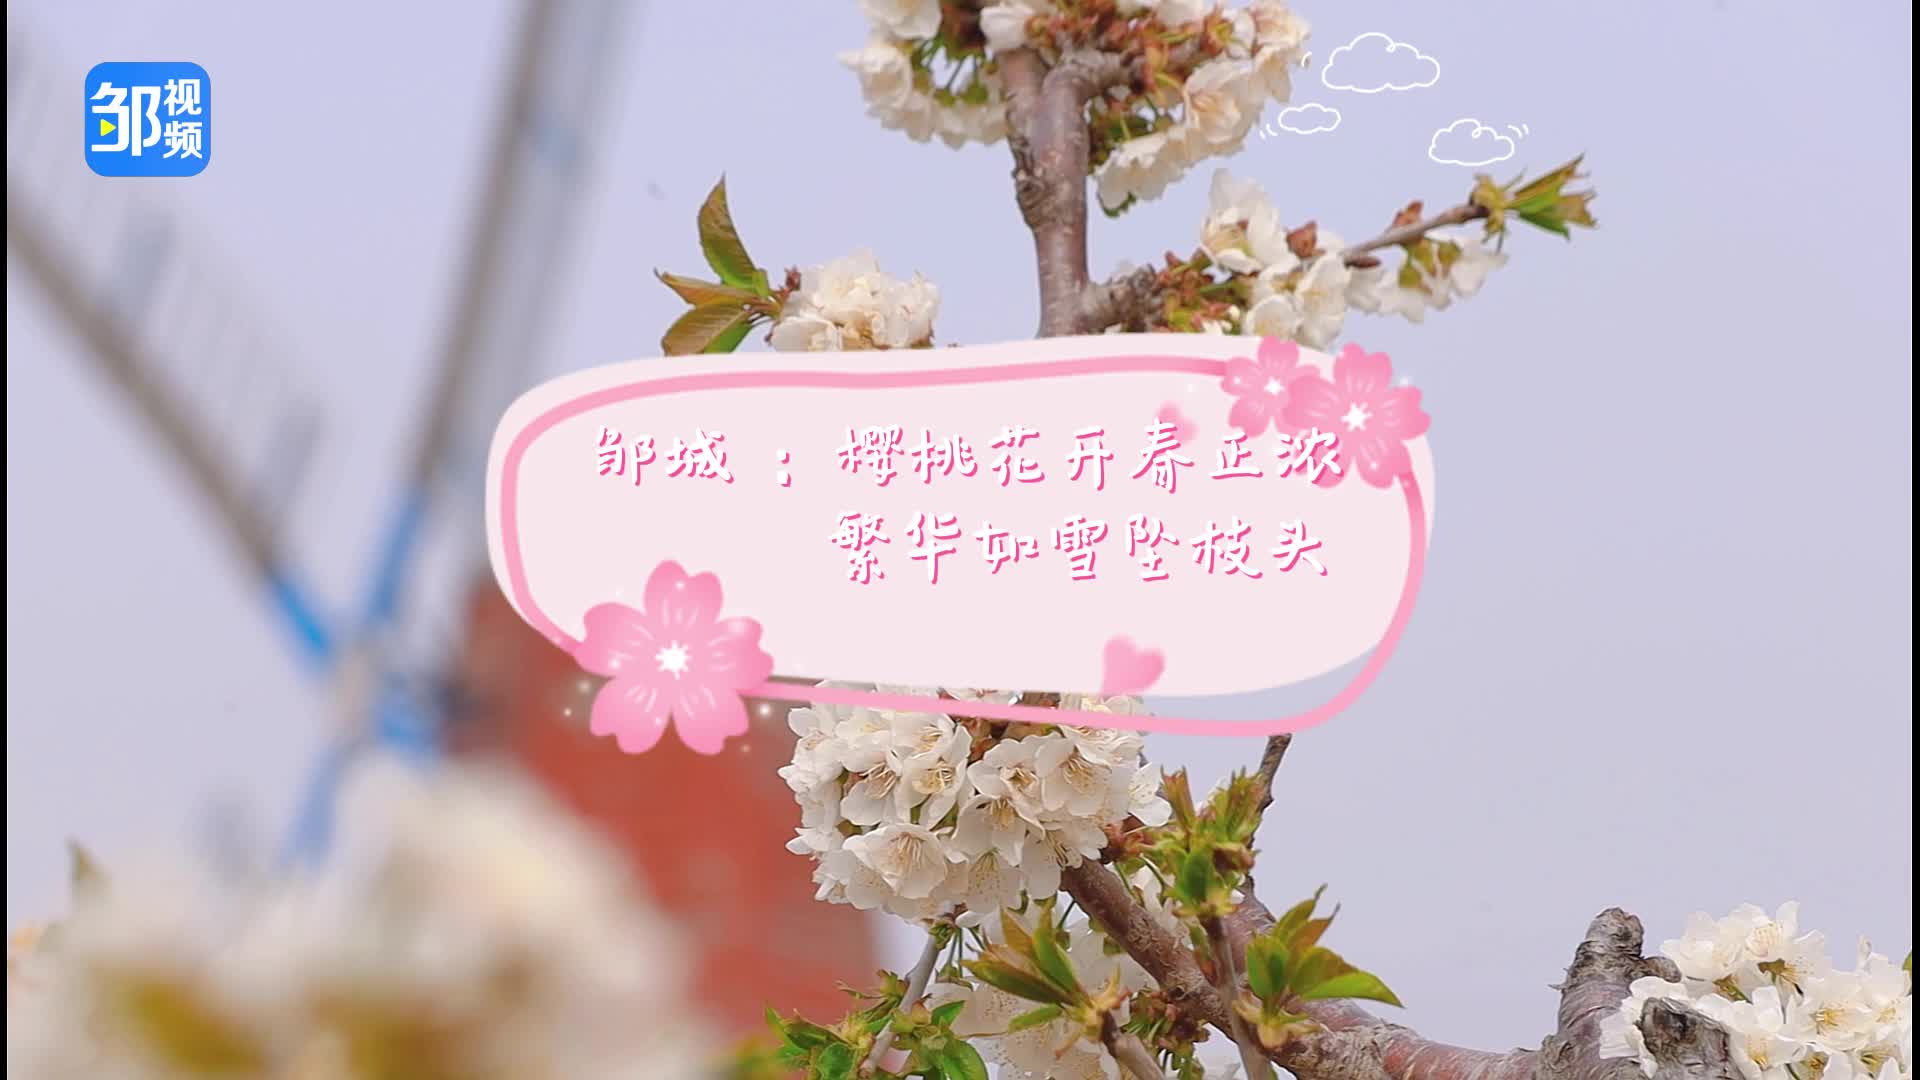 【邹视频·风景】25秒|邹城：樱桃花开春正浓 繁华如雪坠枝头